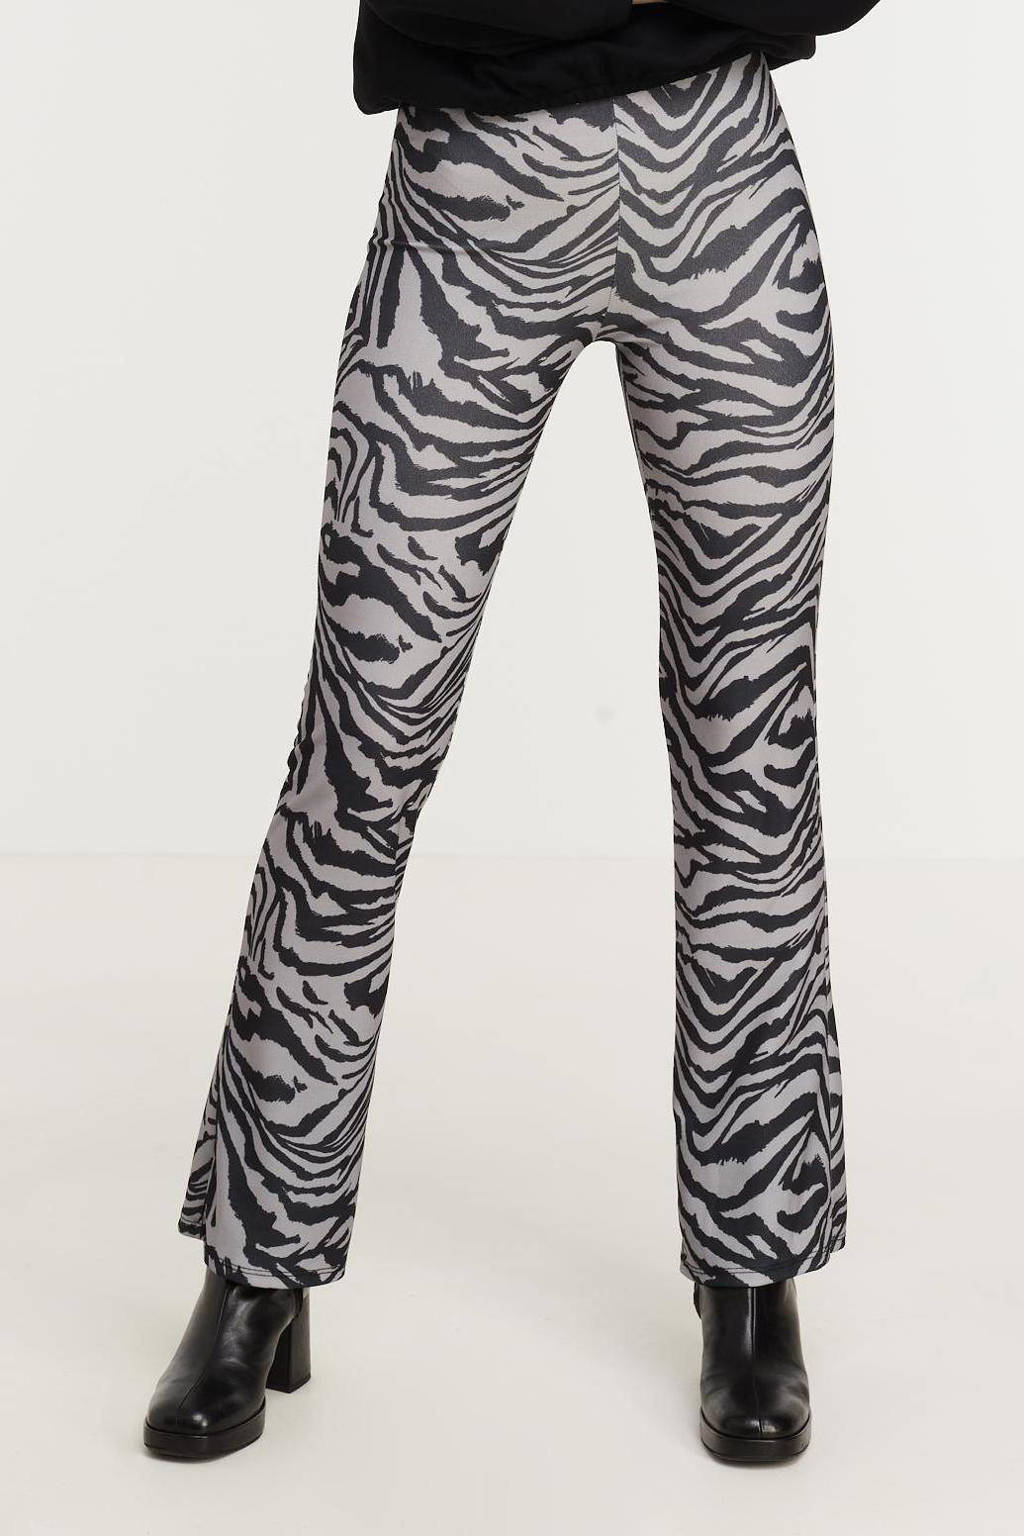 Grijs en zwarte dames Hailys flared legging van polyester met regular waist, elastische tailleband en zebraprint